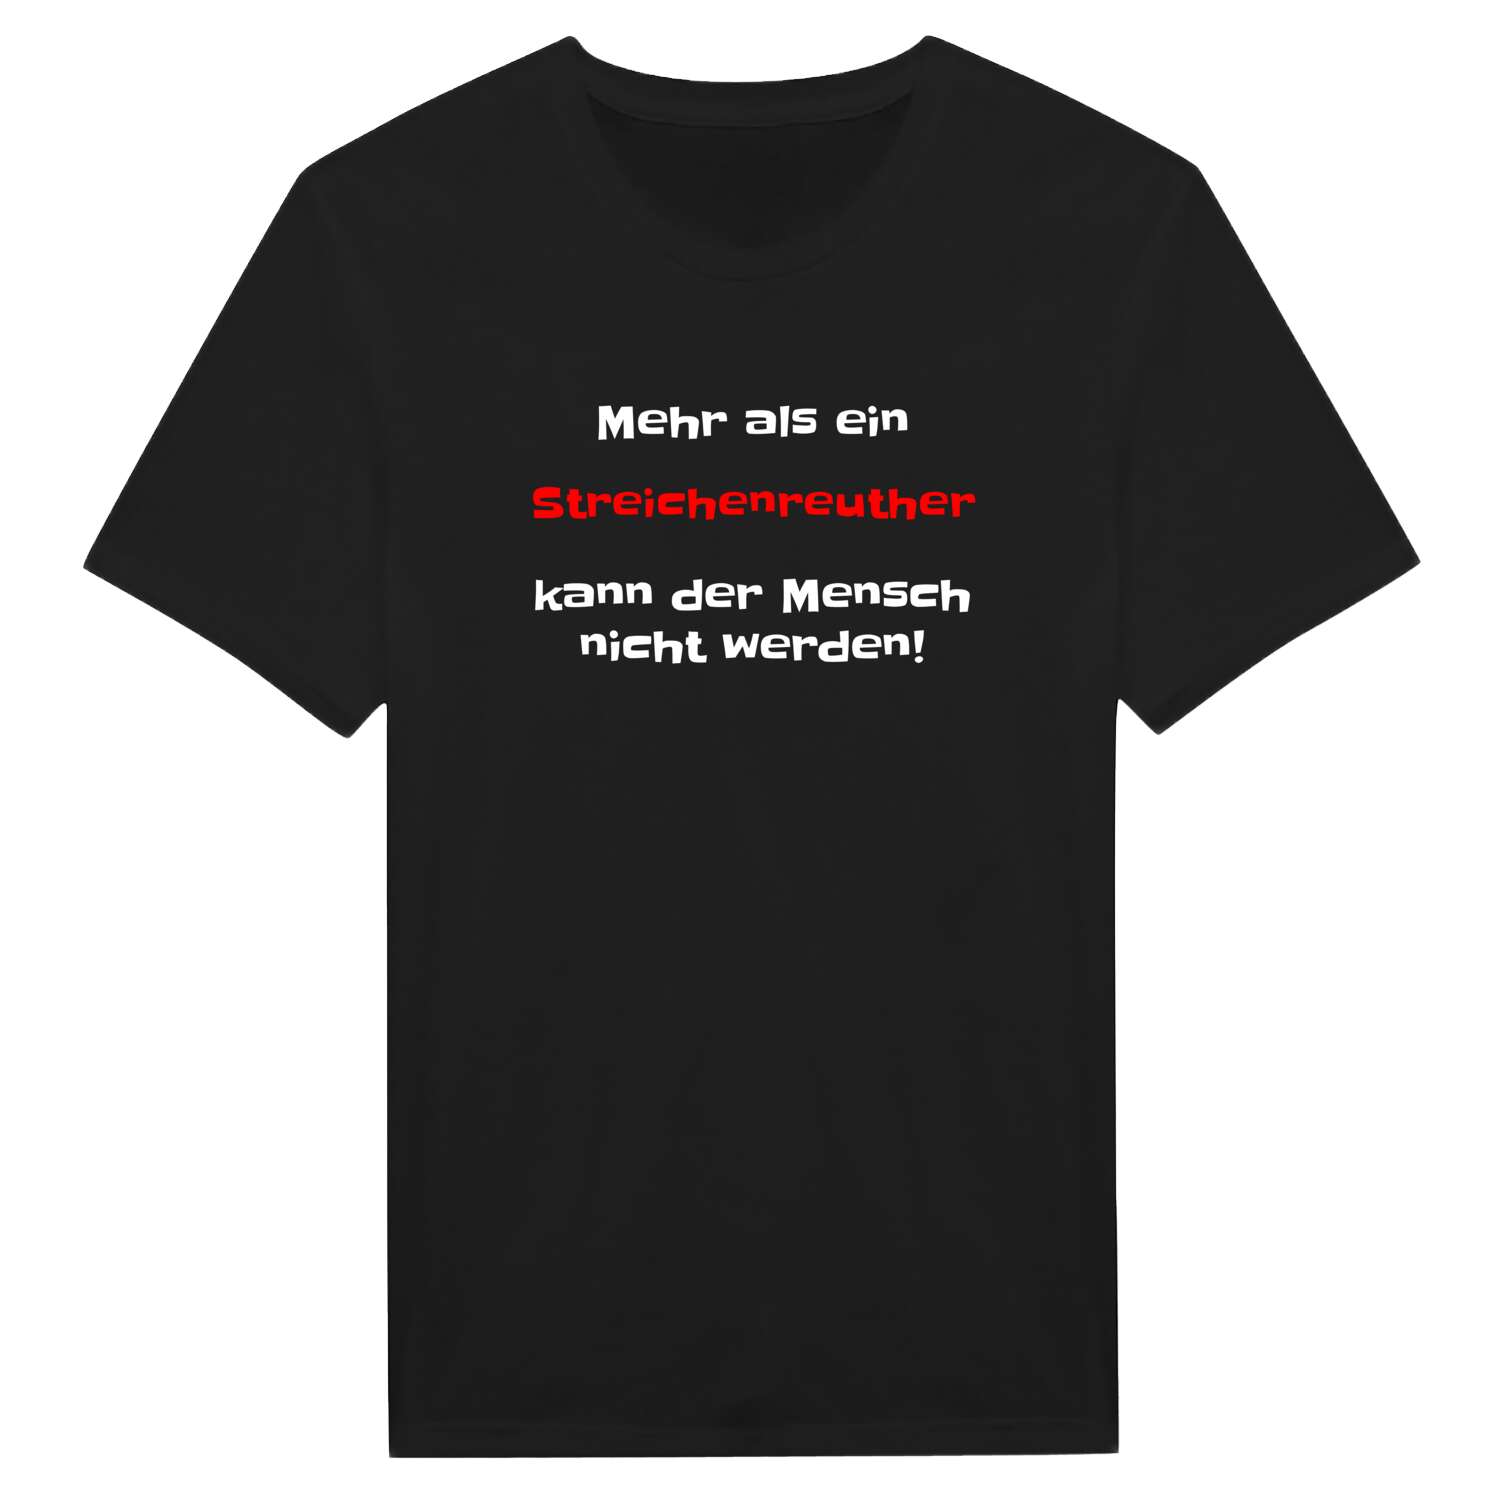 Streichenreuth T-Shirt »Mehr als ein«